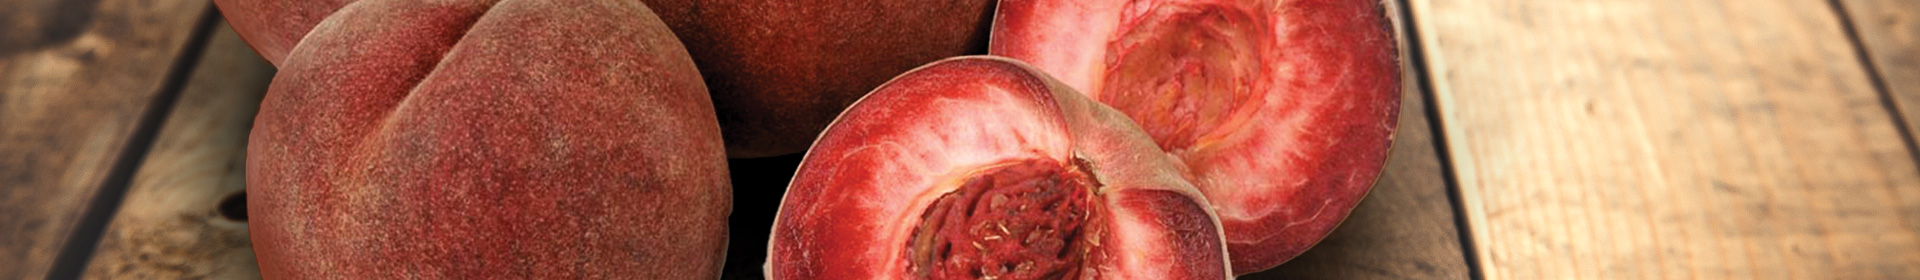 Banniere fruit La pèche de vigne et nectavigne® Sicoly